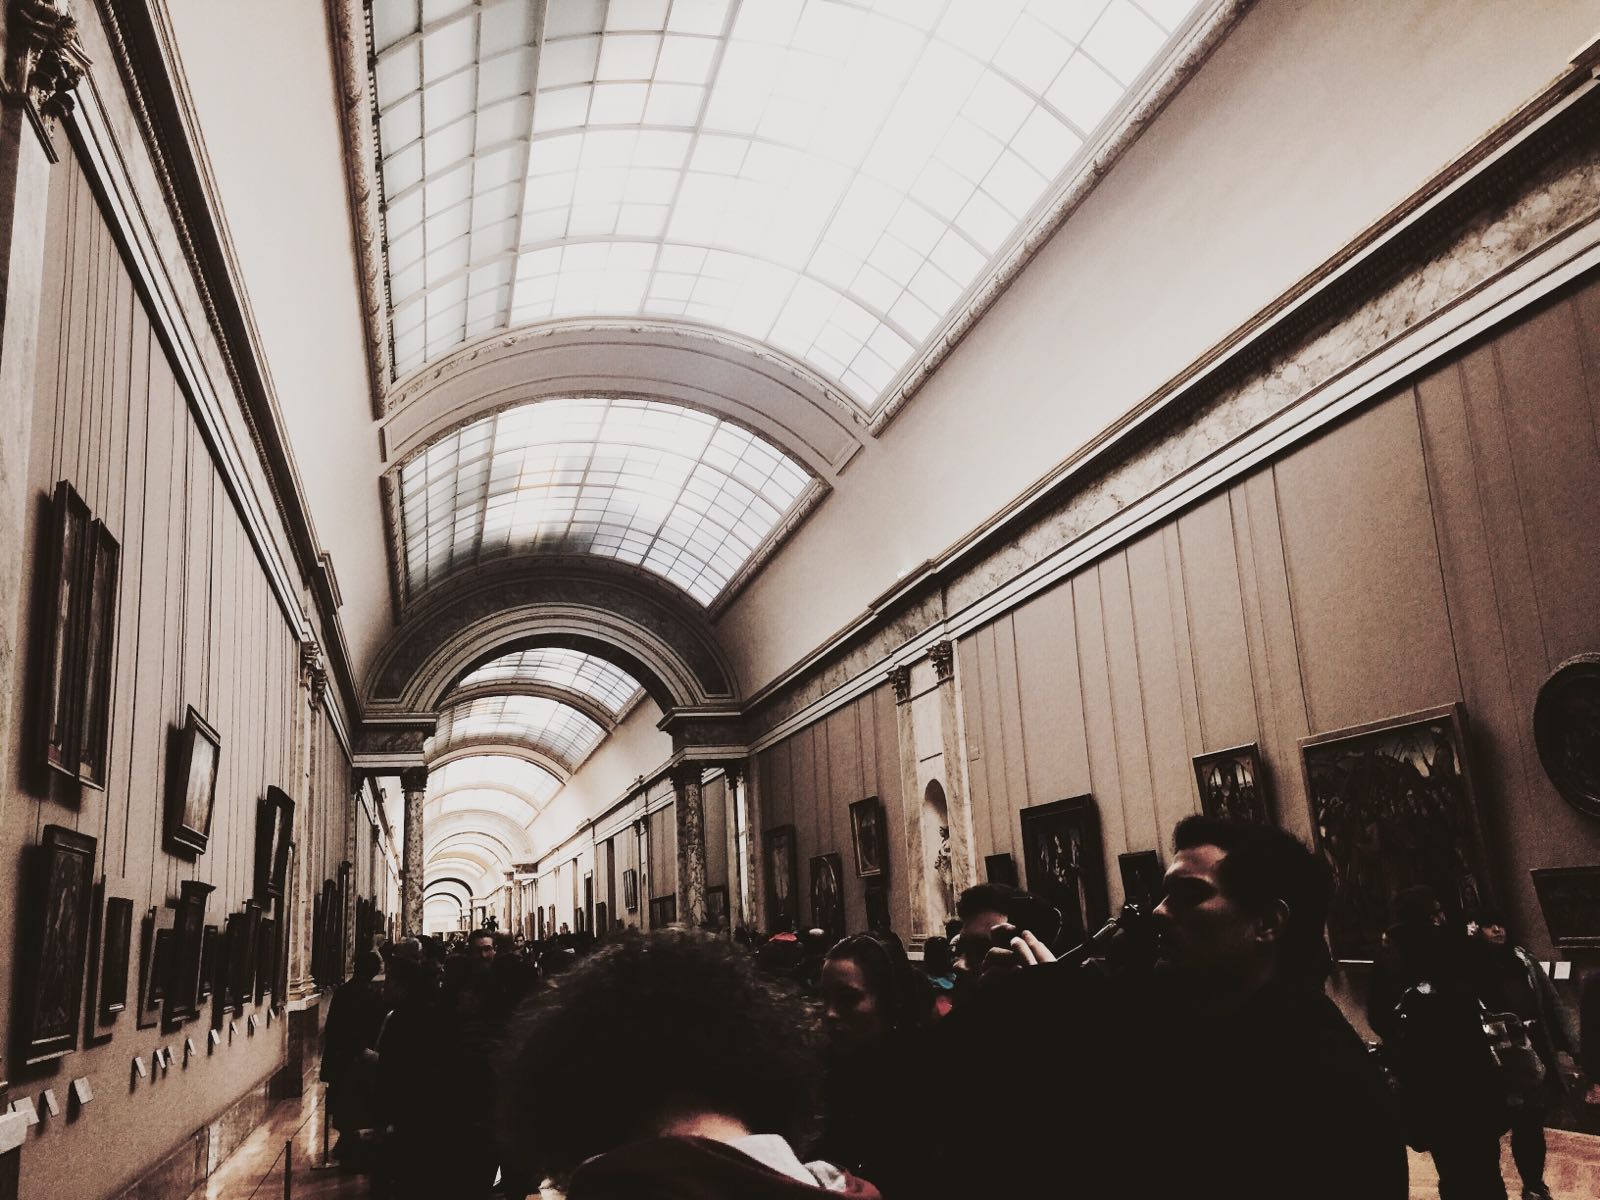 卢浮宫内不止有蒙娜丽莎，全世界最大的博物馆 - 25万件物品 展出的作